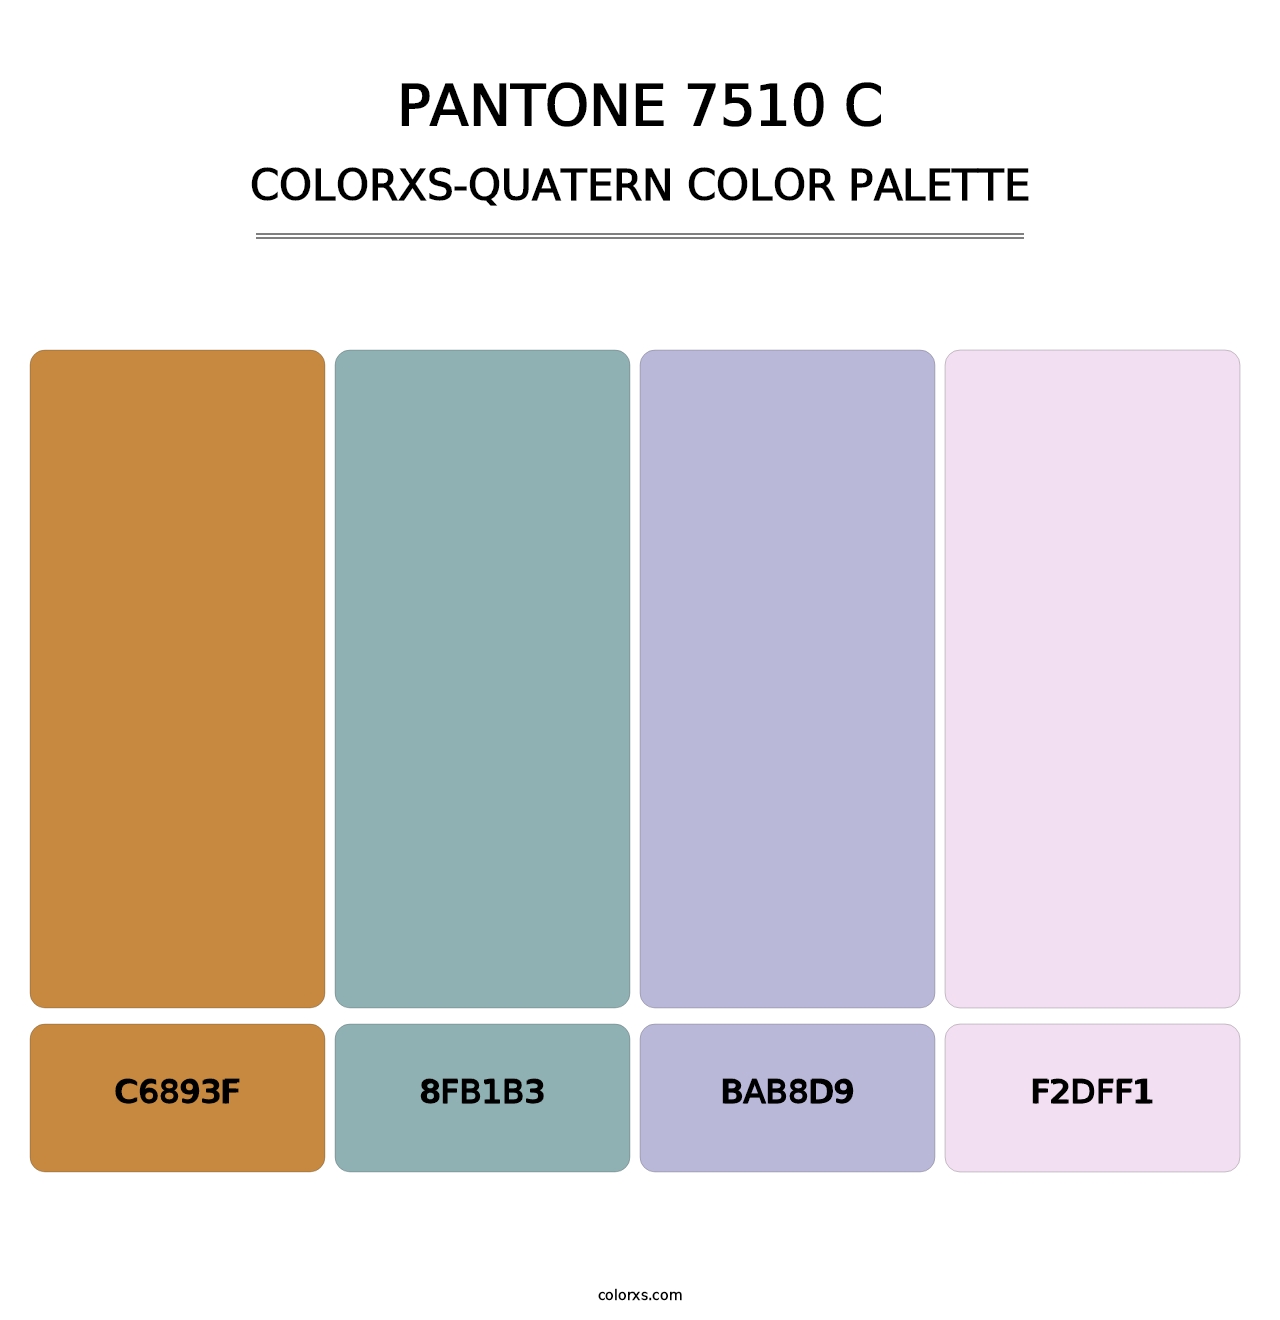 PANTONE 7510 C - Colorxs Quatern Palette